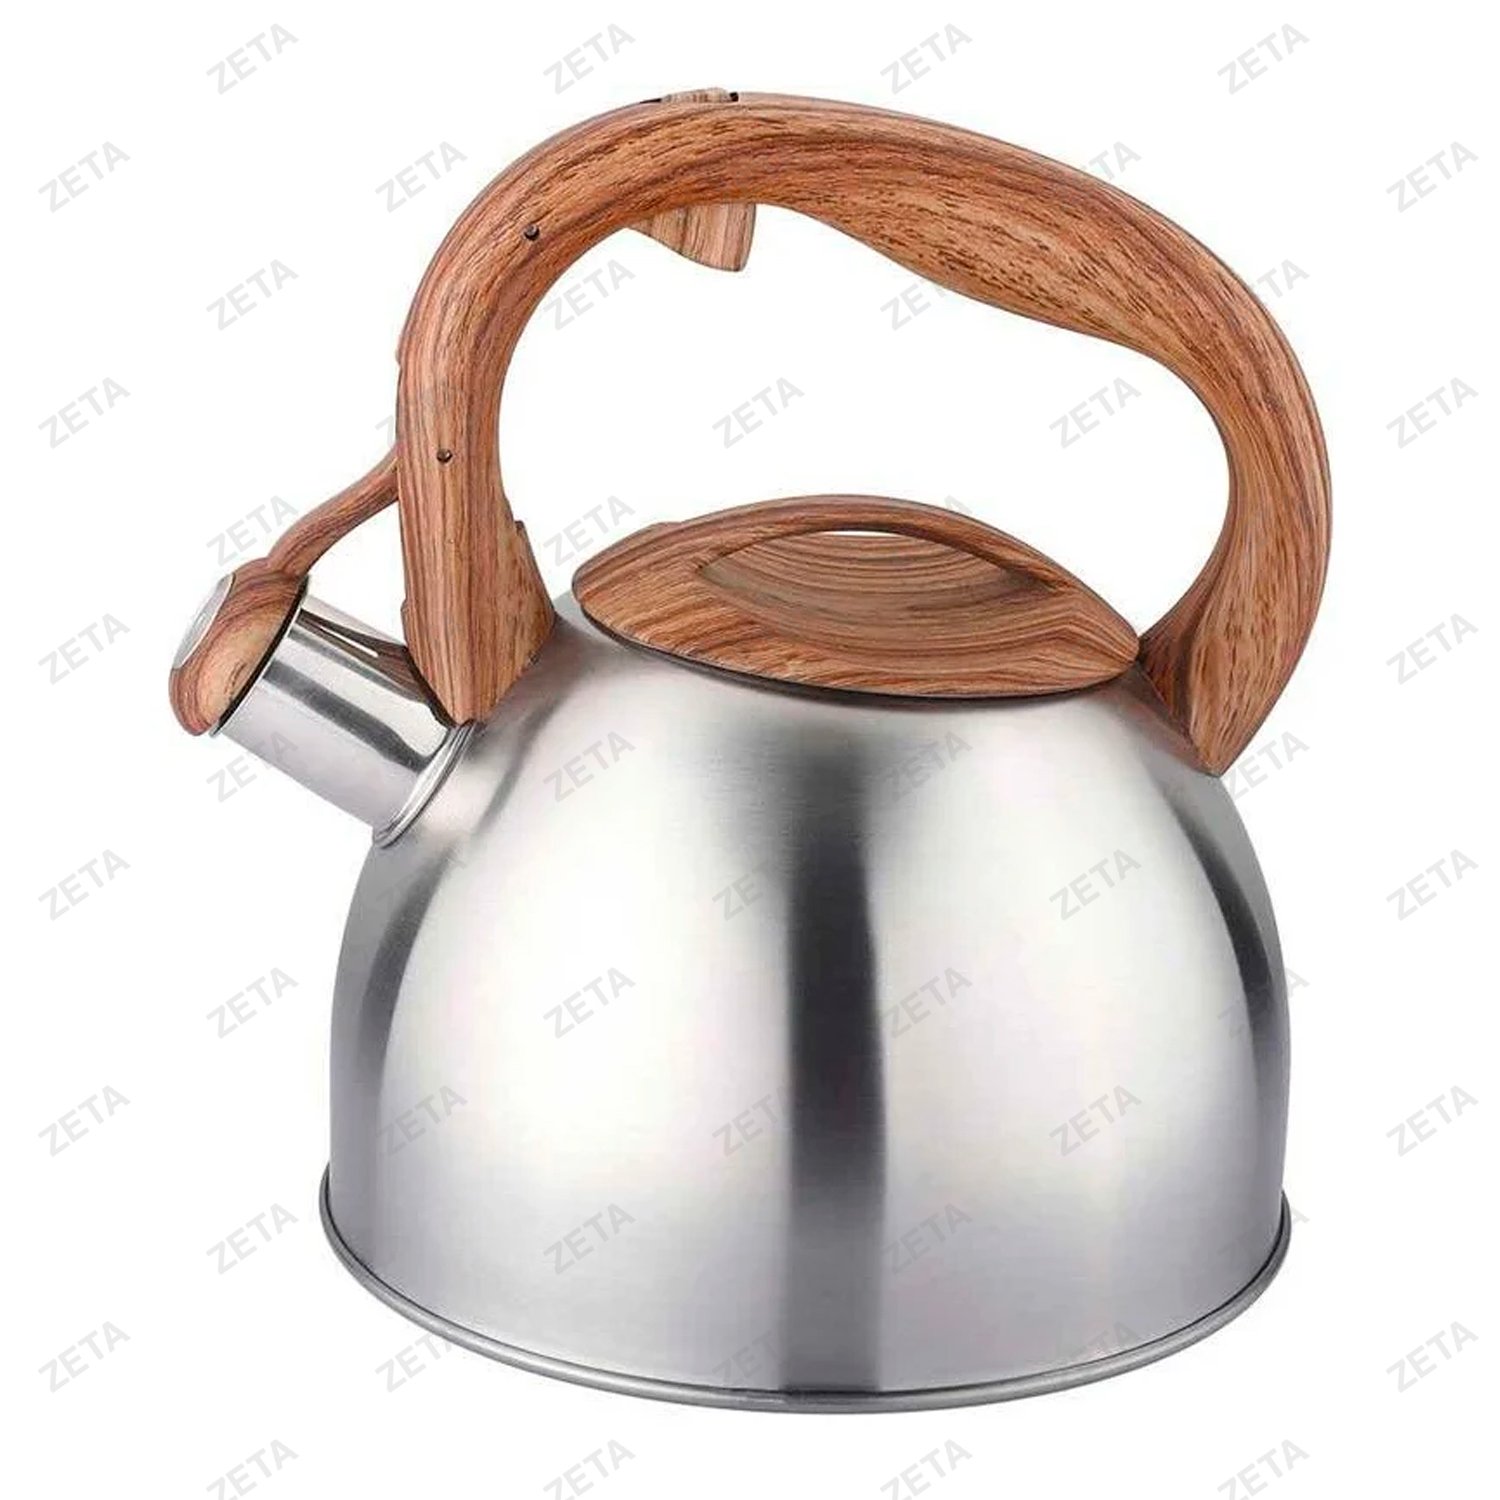 Чайник со свистком LKD-4125BR 2,5 л. серебристый/коричневый Appetite - изображение 1